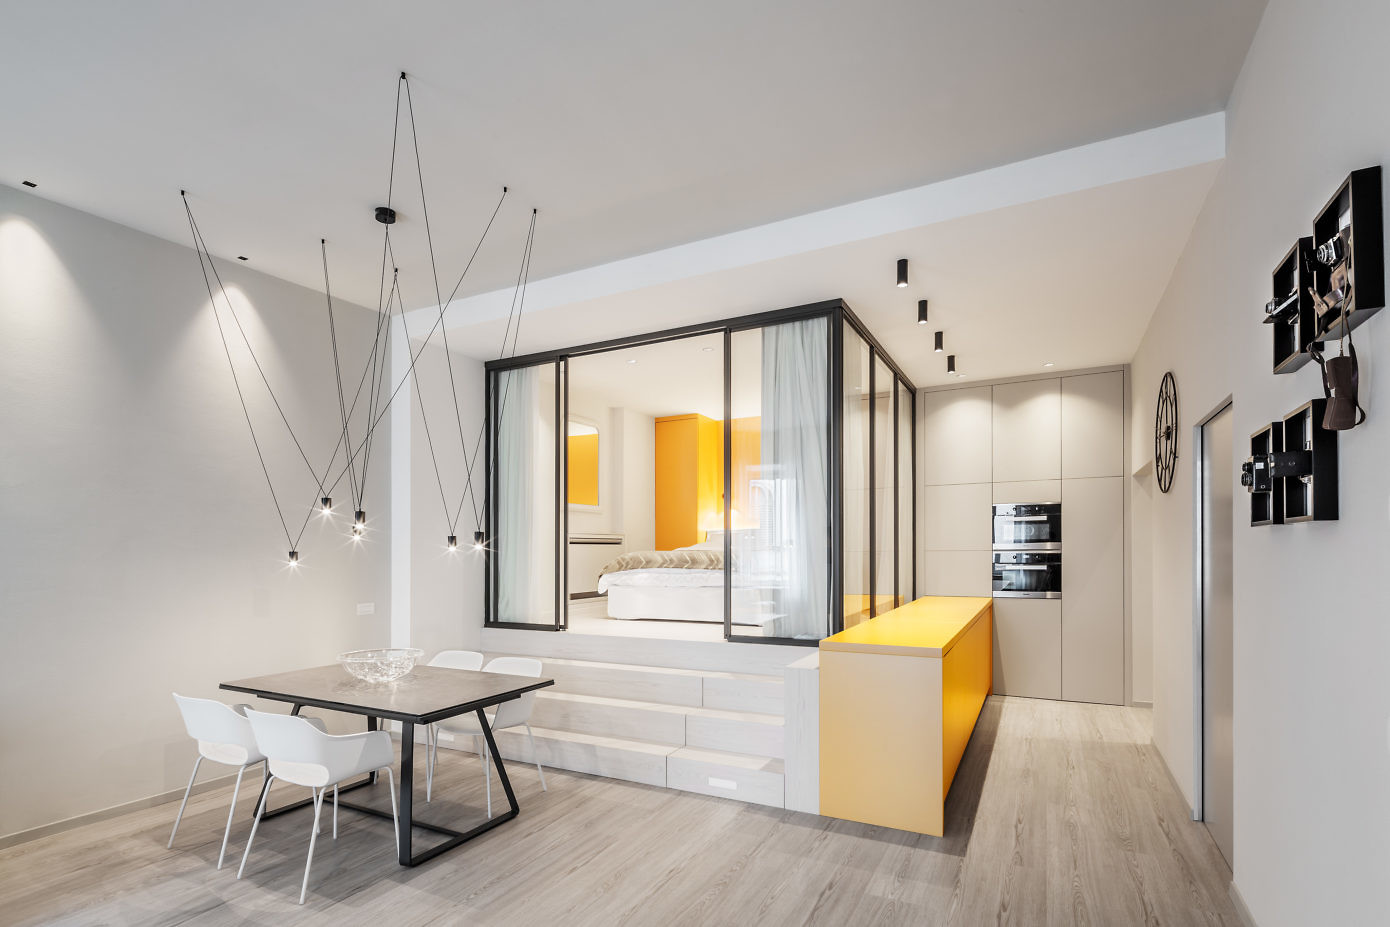 Apartment in Trento by Studio Raro